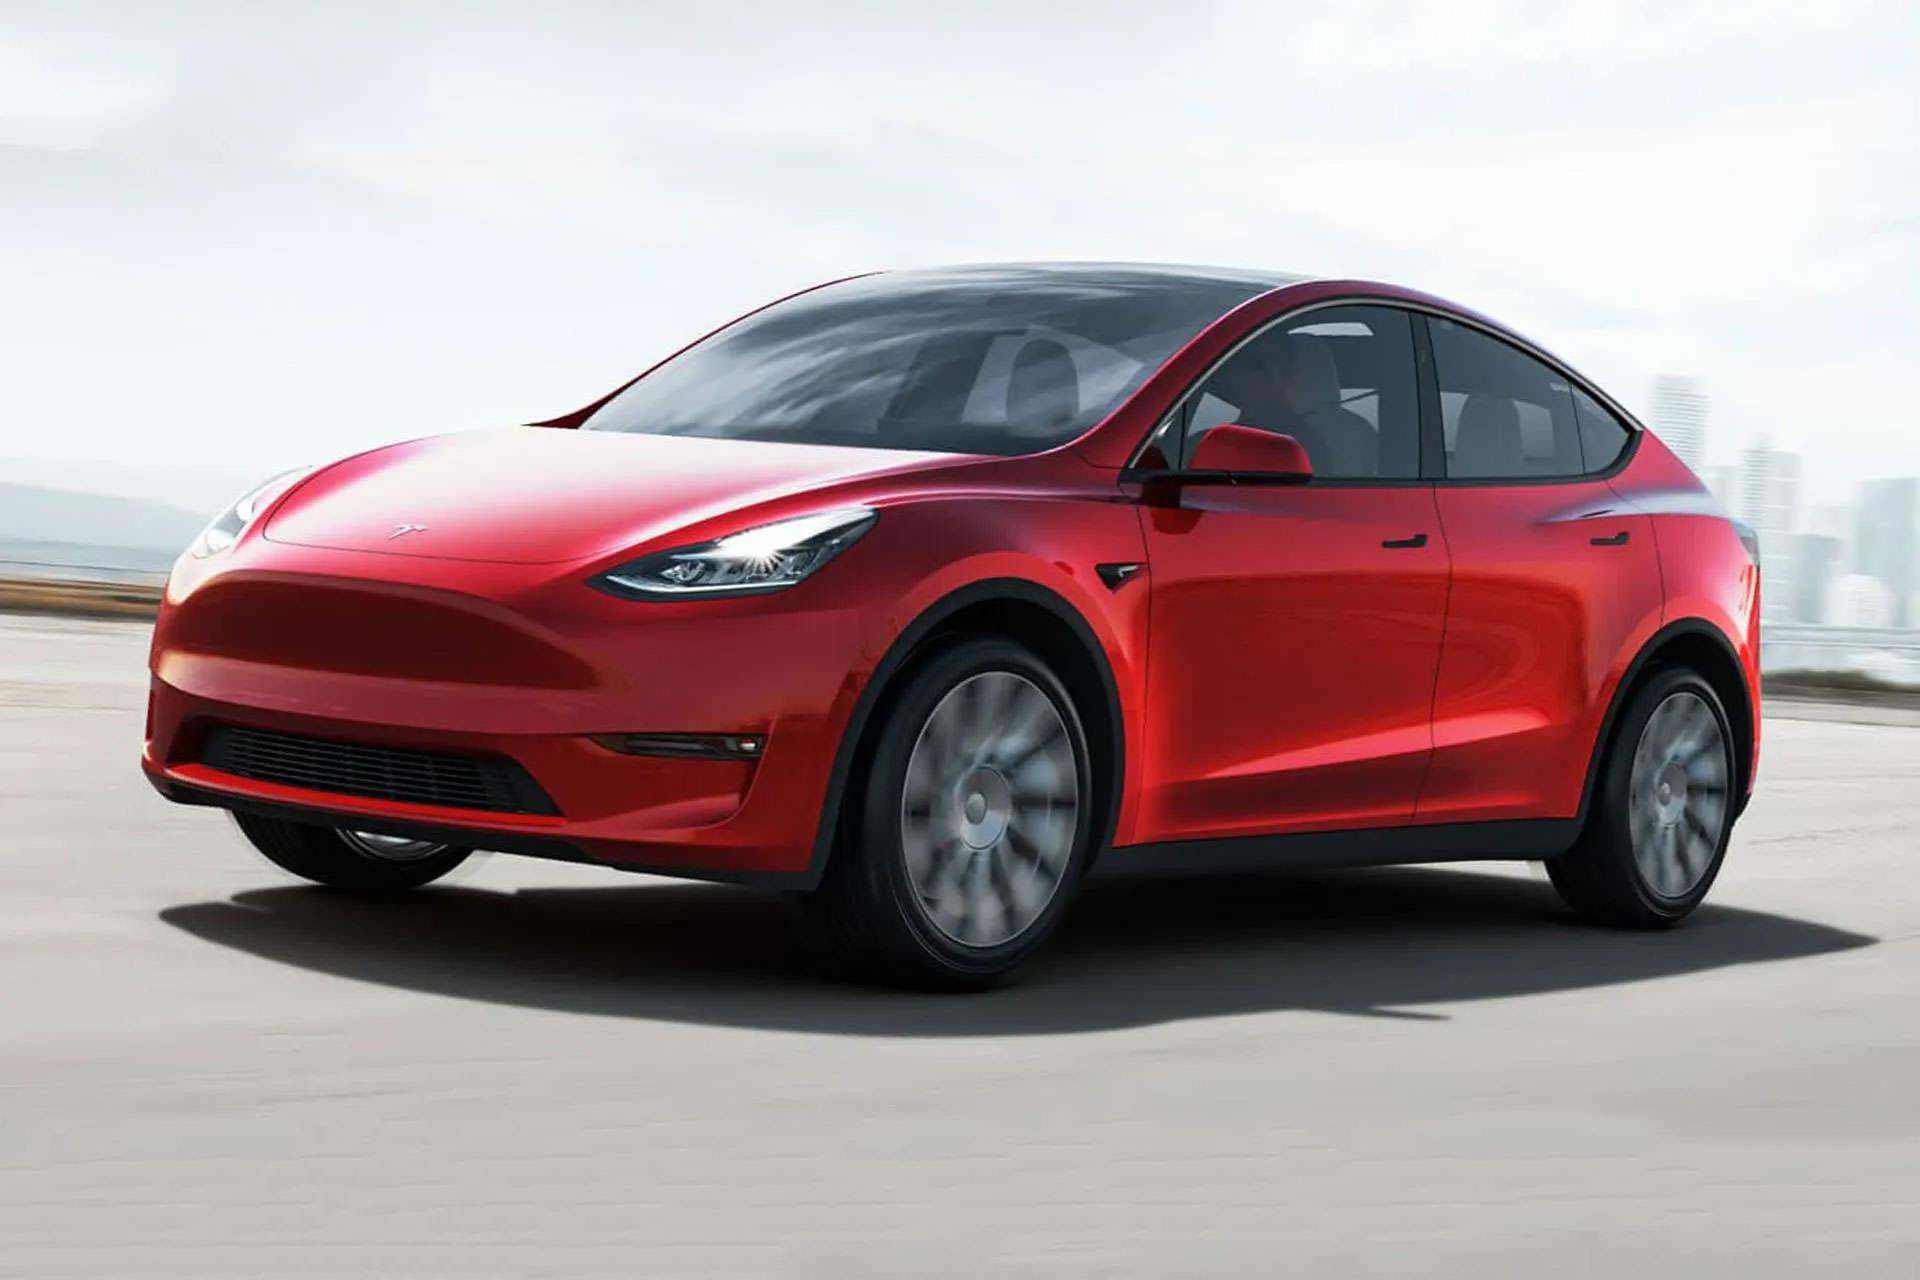 تسلا مدل Y قرمز رنگ در جاده / Tesla Model Y